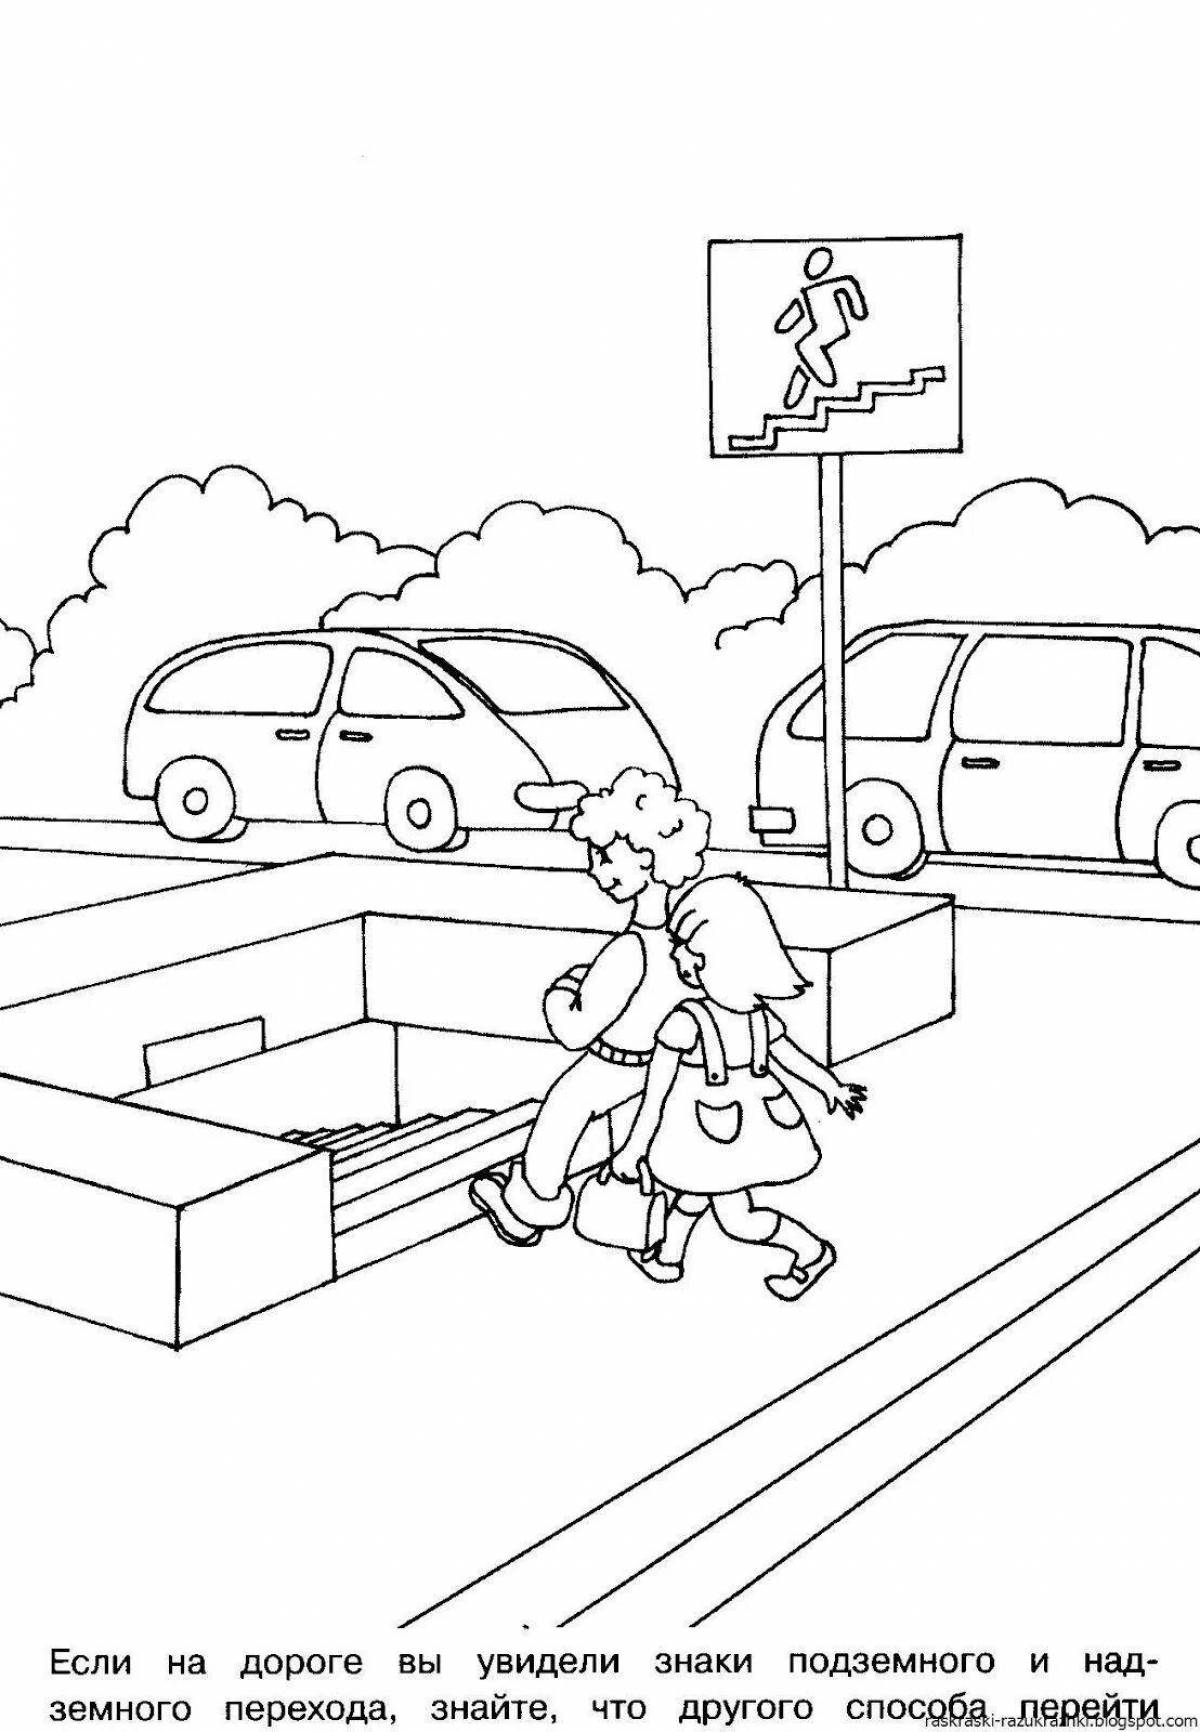 Привлекательная страница «безопасность дорожного движения» для малышей